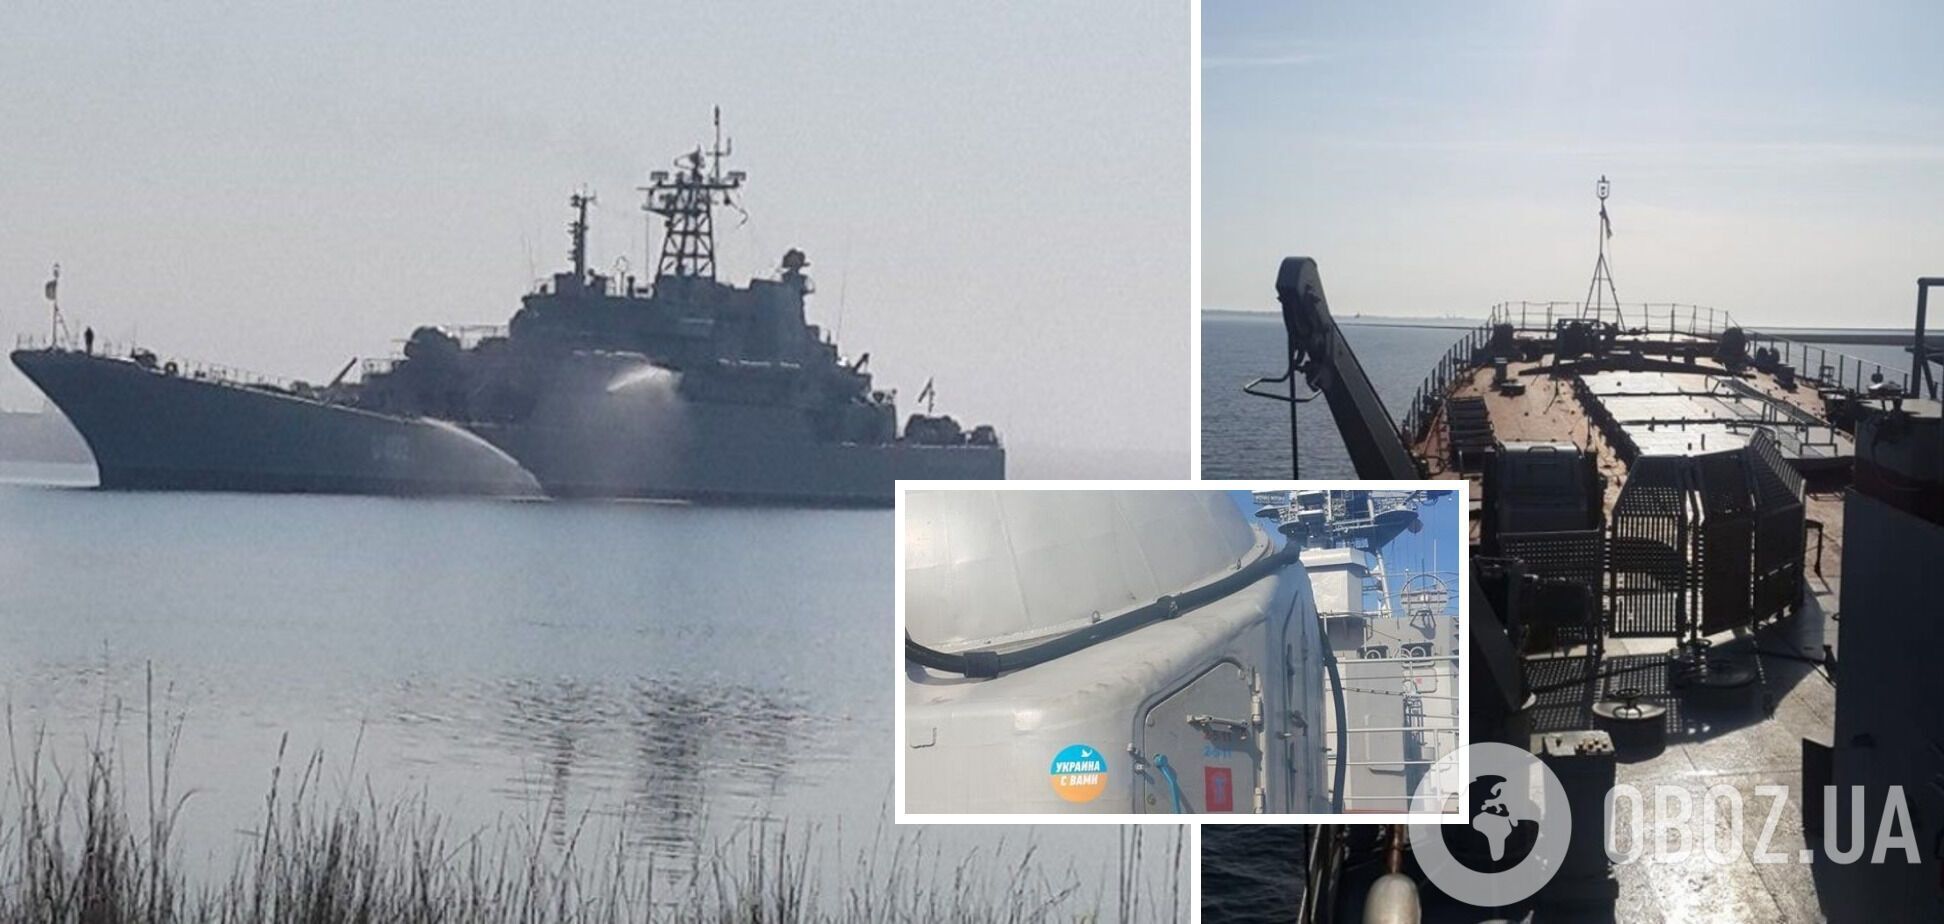 Был захвачен войсками РФ во время аннексии Крыма: что известно о пораженном "Нептуном" корабле "Константин Ольшанский"